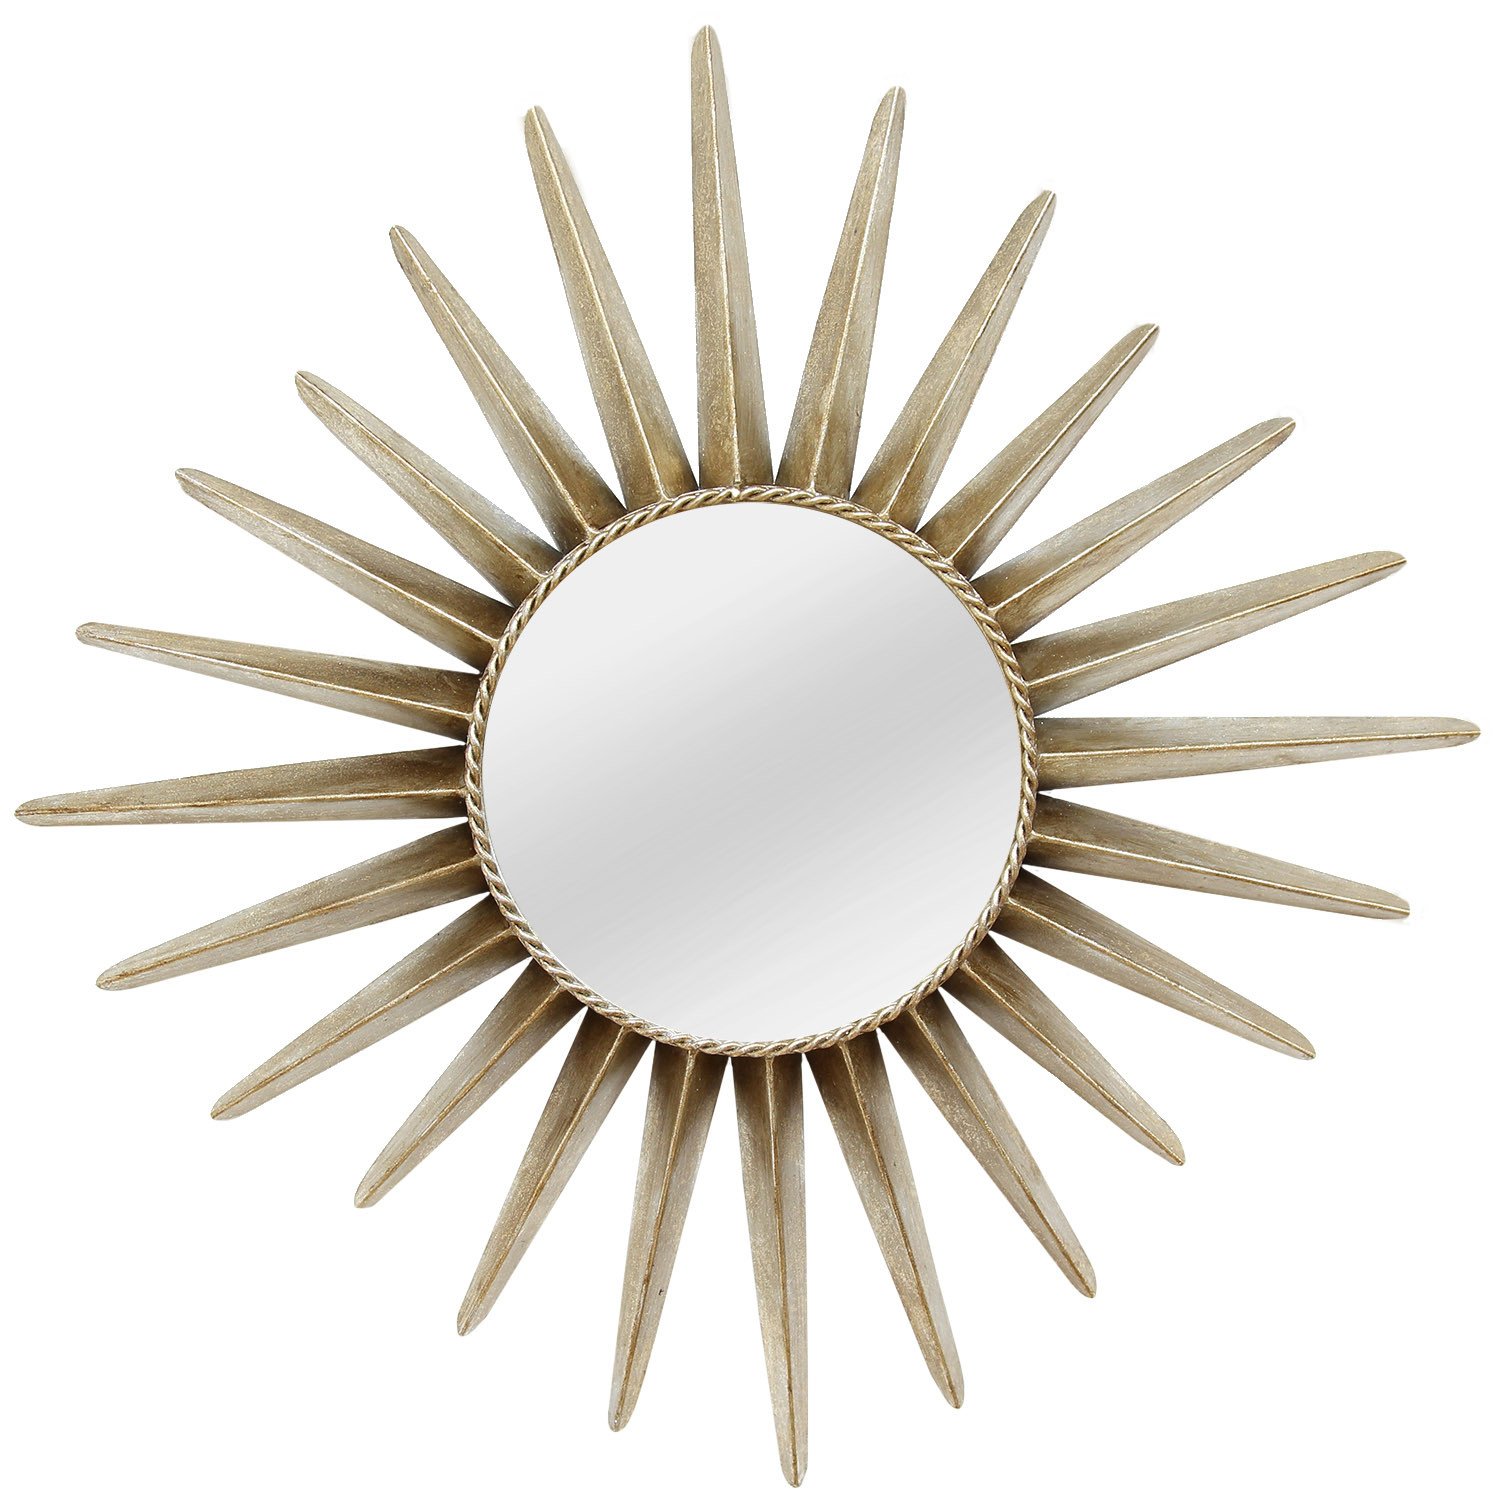 25.75" X 1.5" X 25.75" Bronze Round Sunburst Wall Mirror